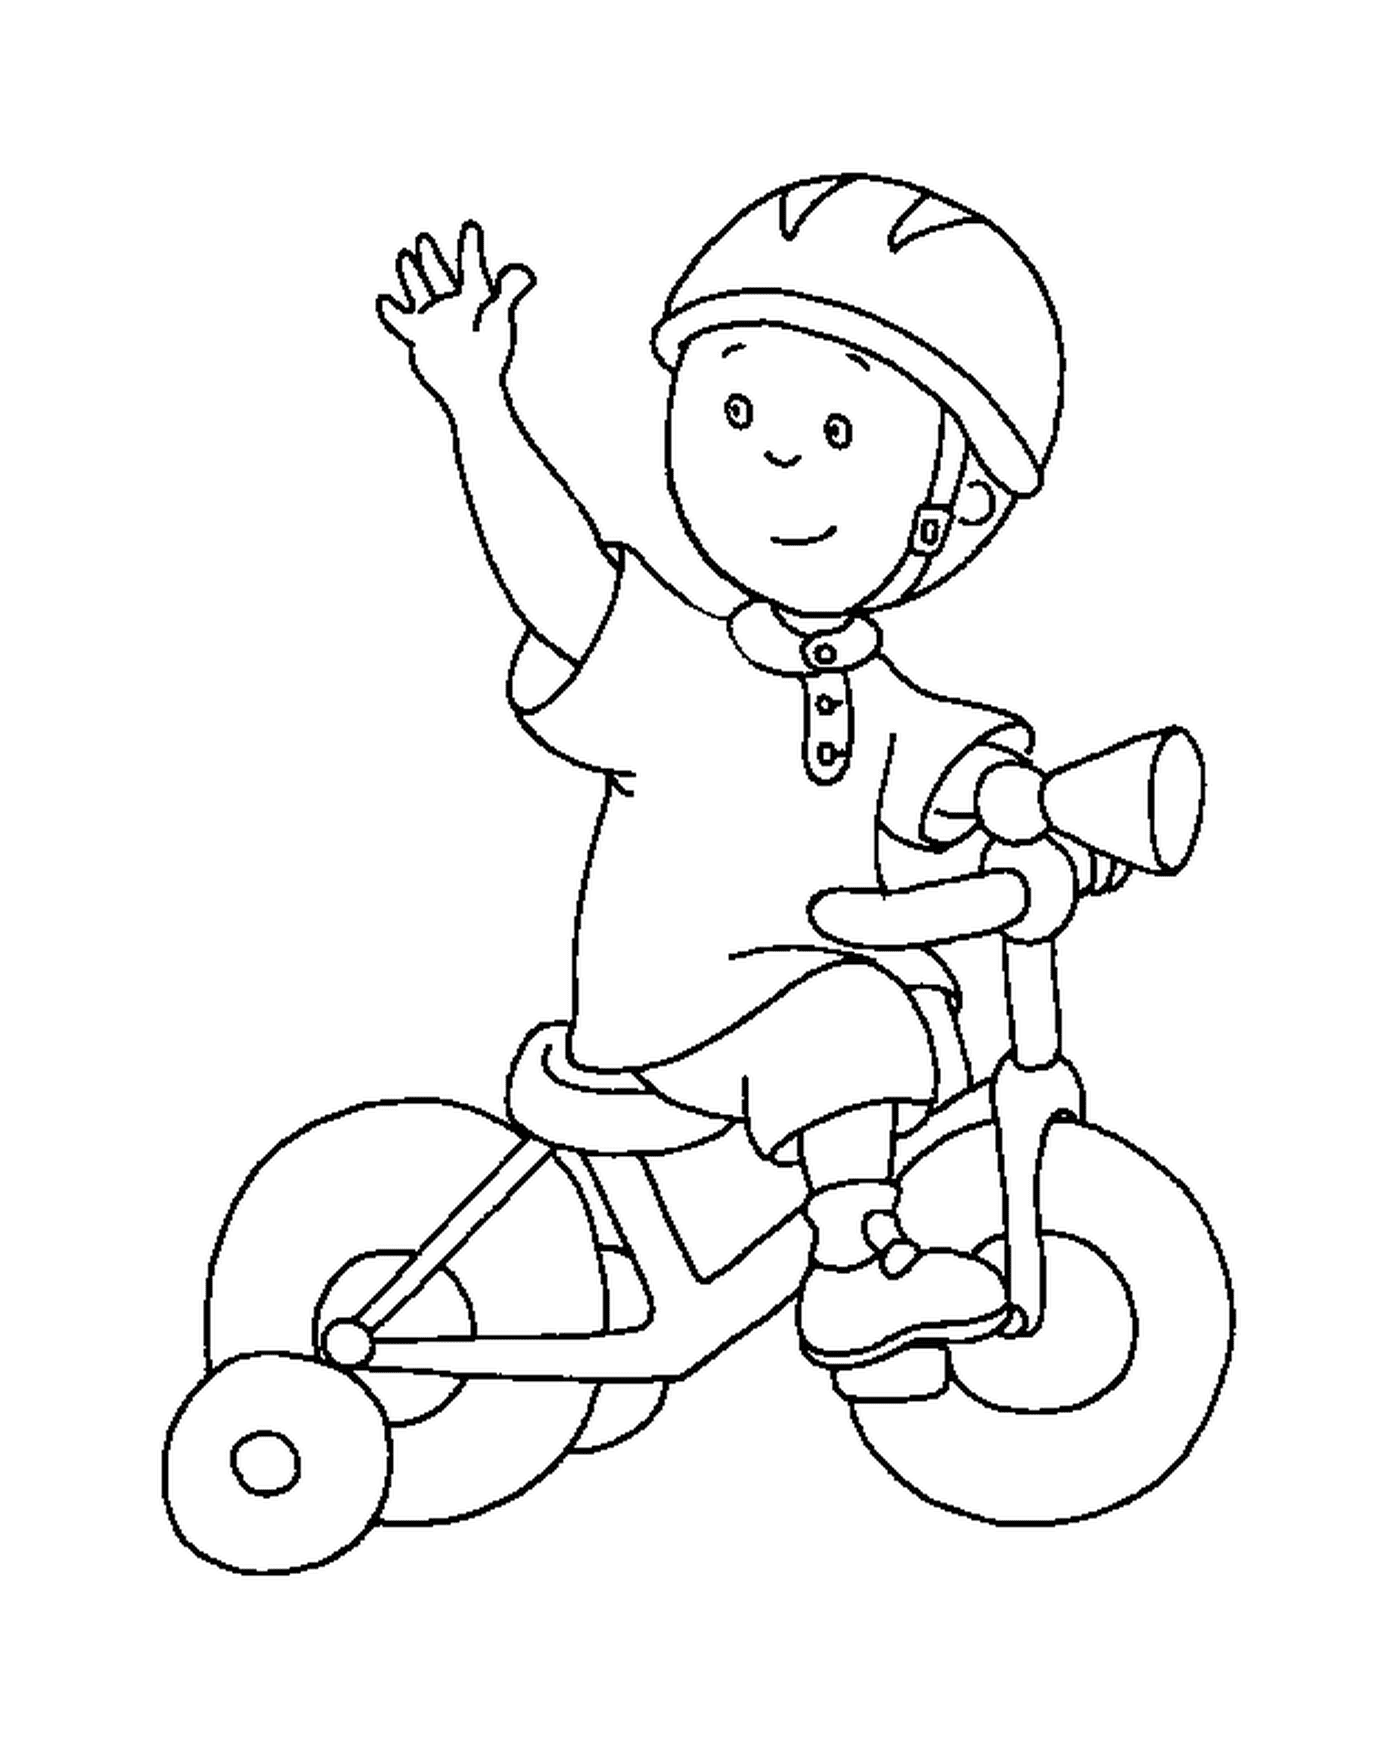  Apprendimento ciclistico di Caillou 